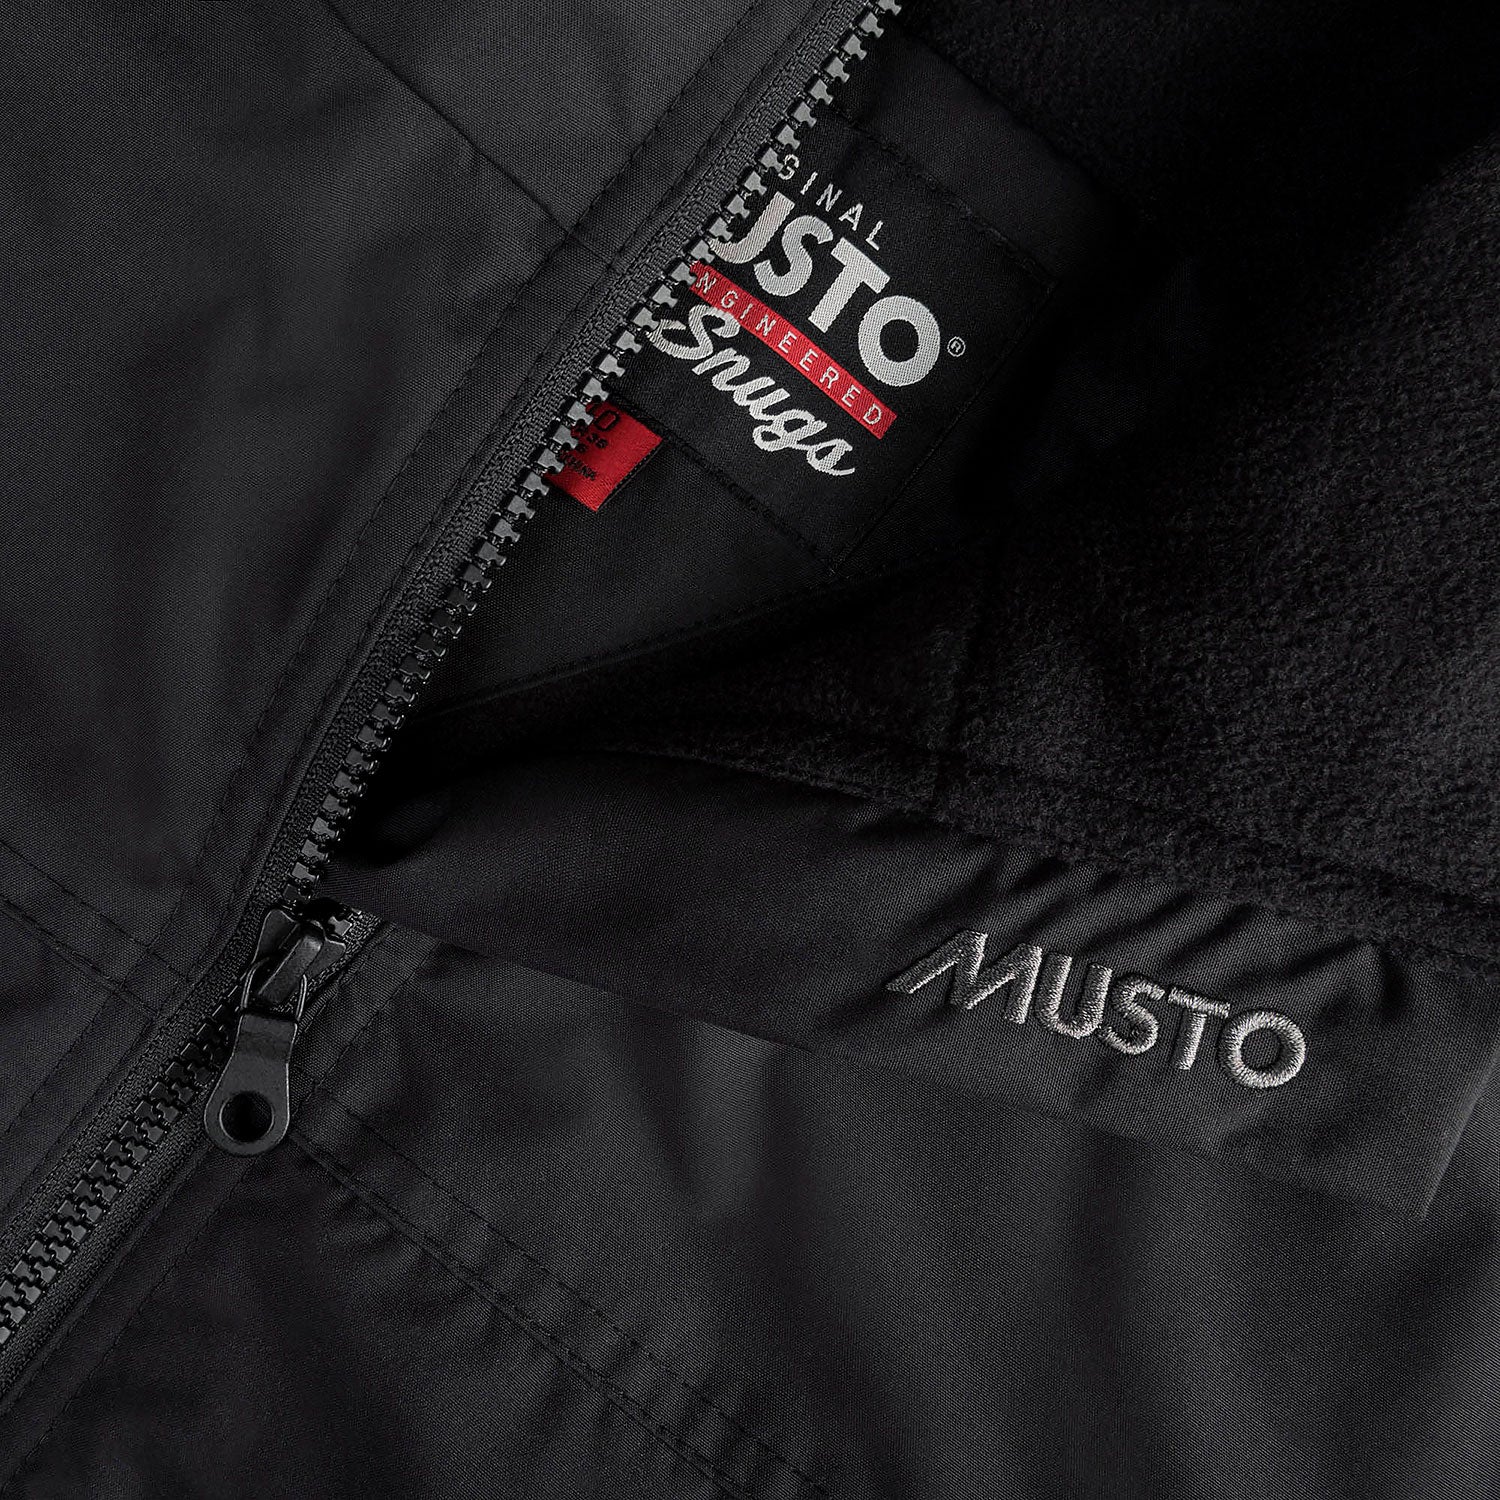 Musto original Snug engineered jacket